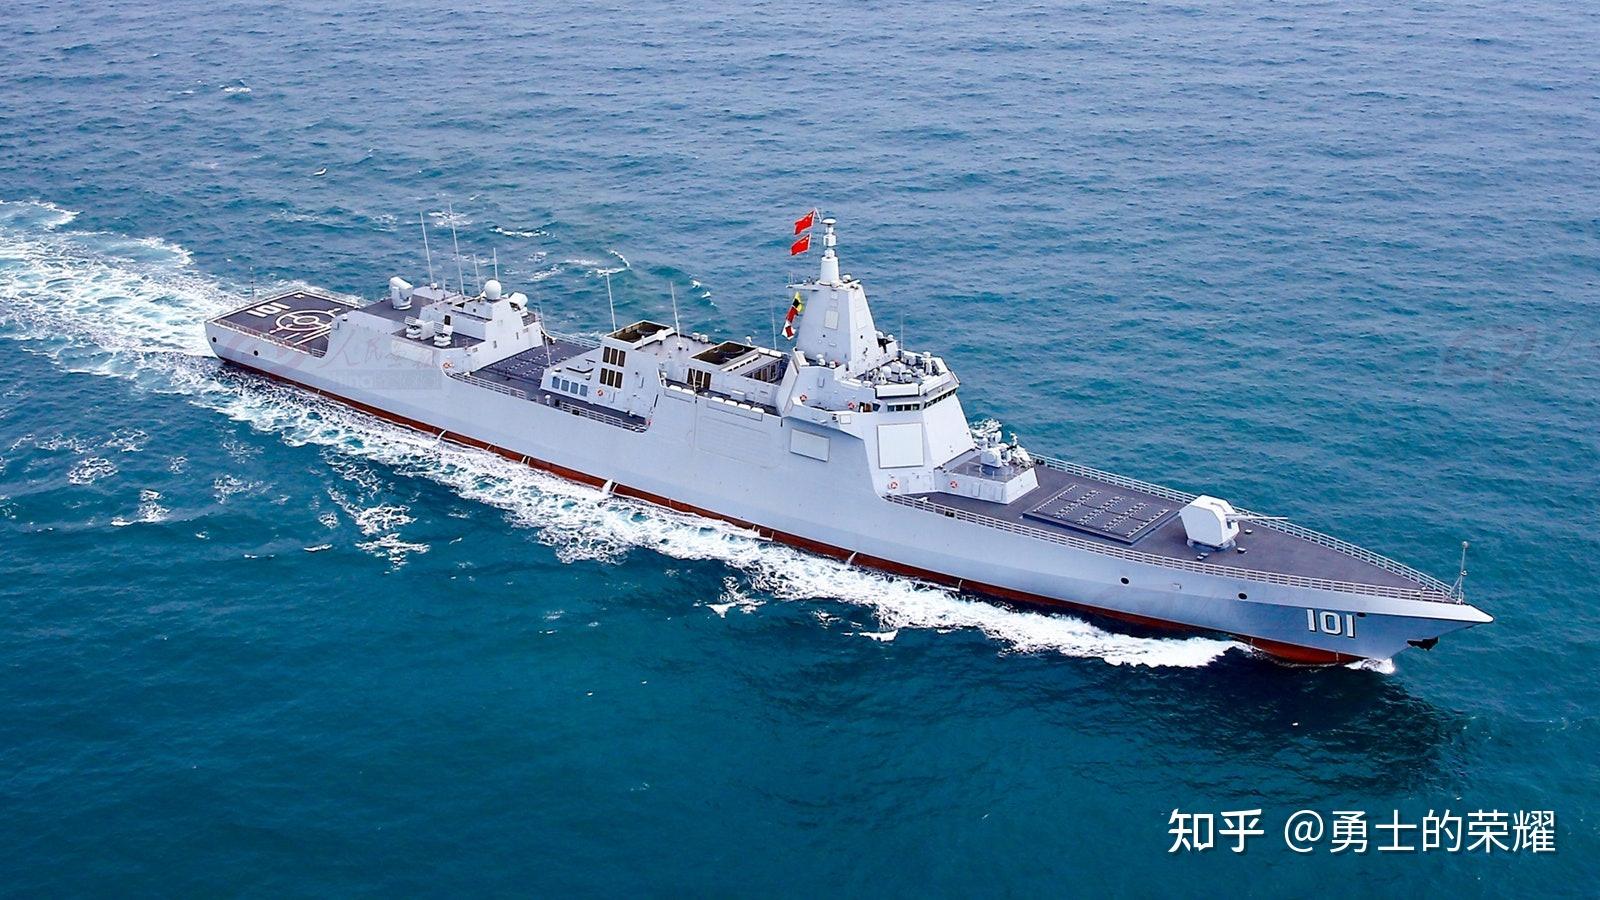 第十艘055驱逐舰入列在即,中国海军实力秀,美国担忧加剧!